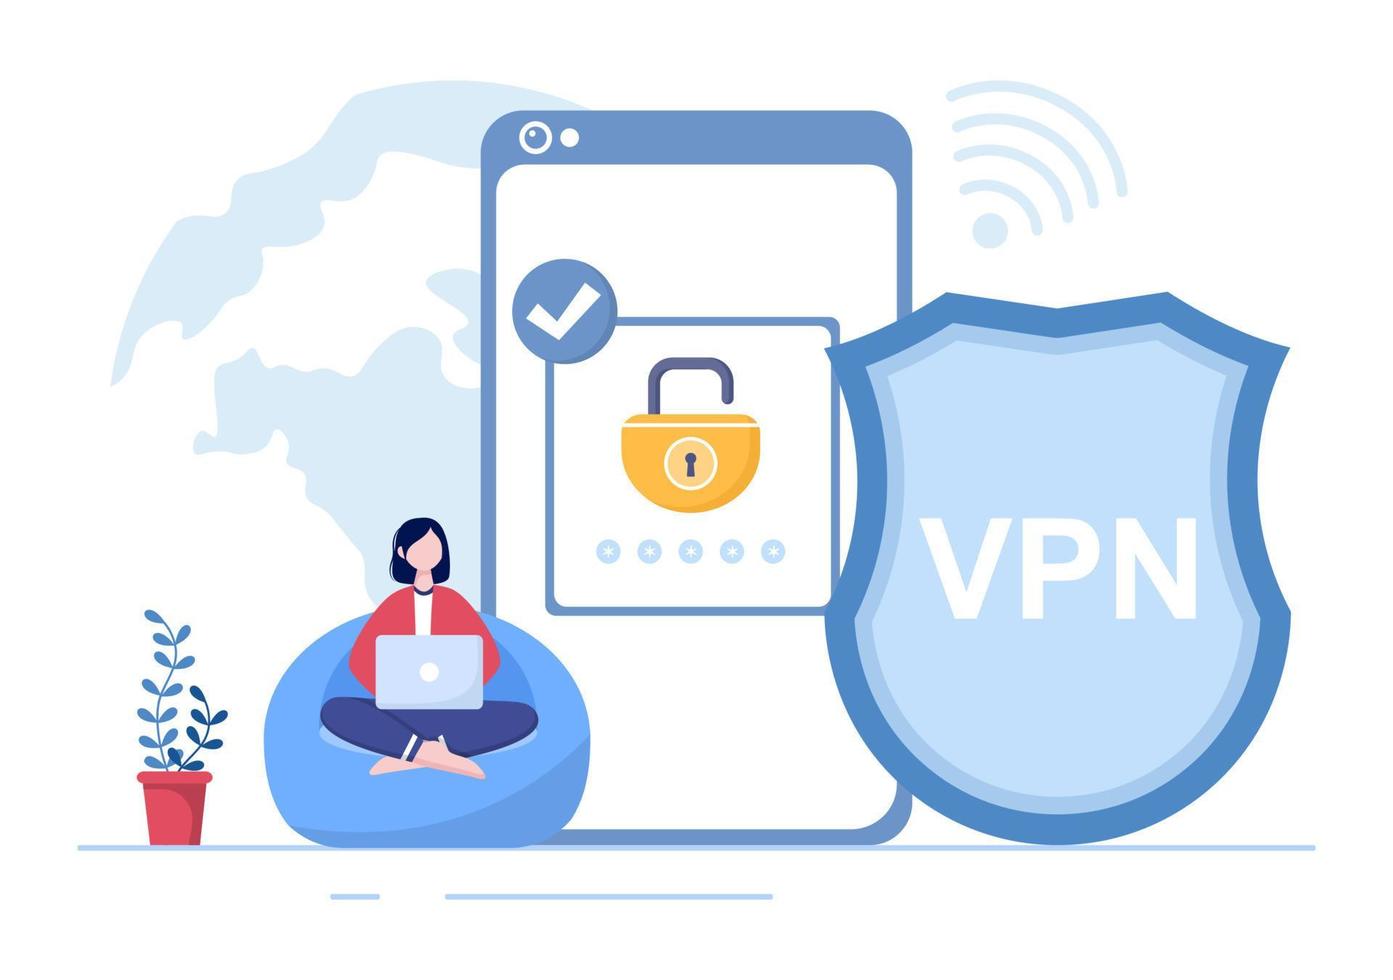 vpn ou illustration vectorielle de dessin animé de service de réseau privé virtuel pour protéger, cybersécurité et sécuriser ses données personnelles dans un smartphone ou un ordinateur vecteur